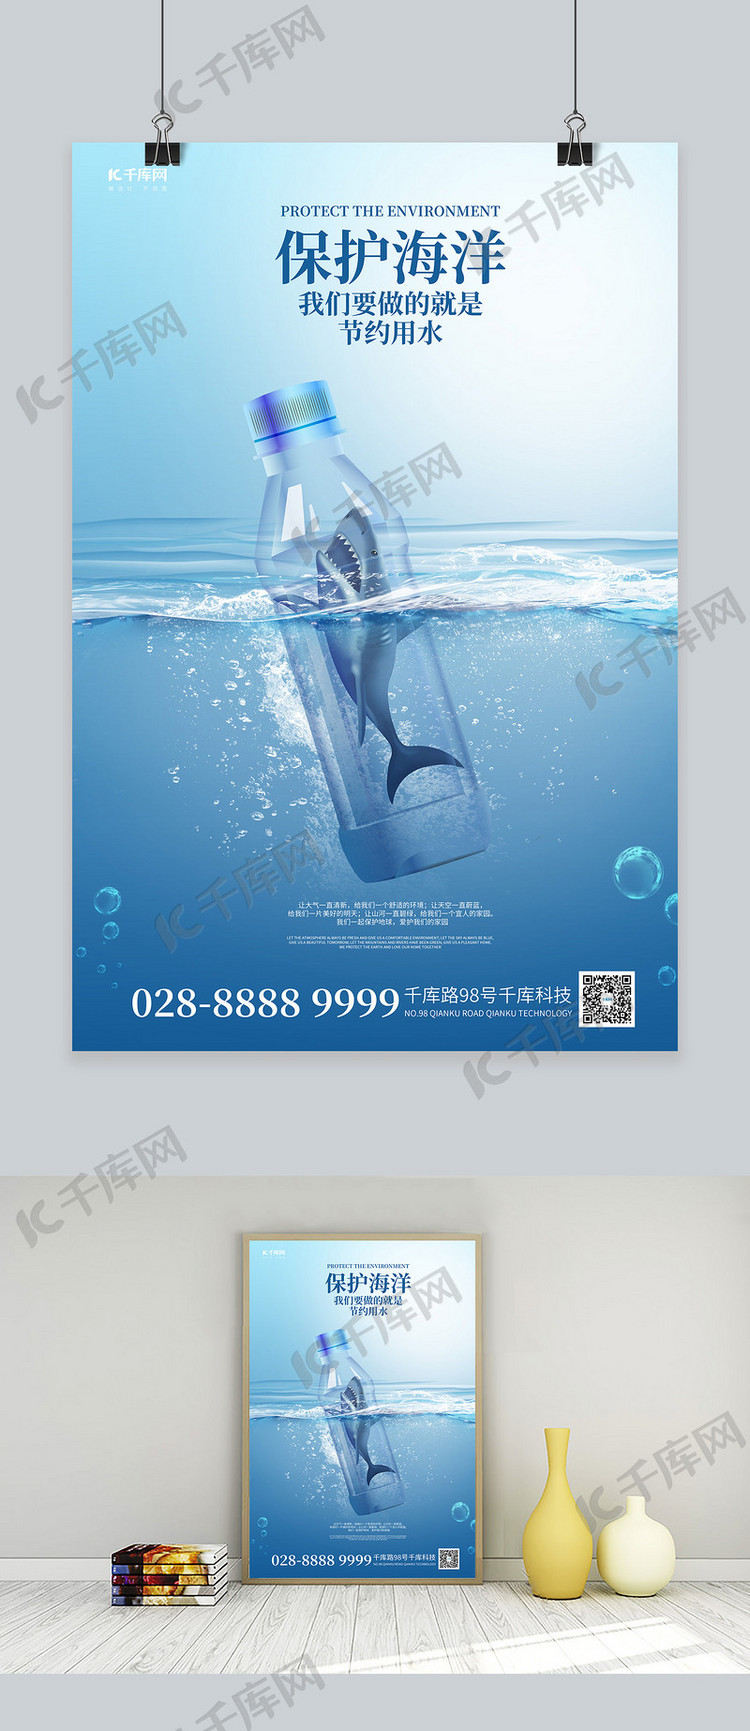 保护环境鲨鱼蓝色简约海报